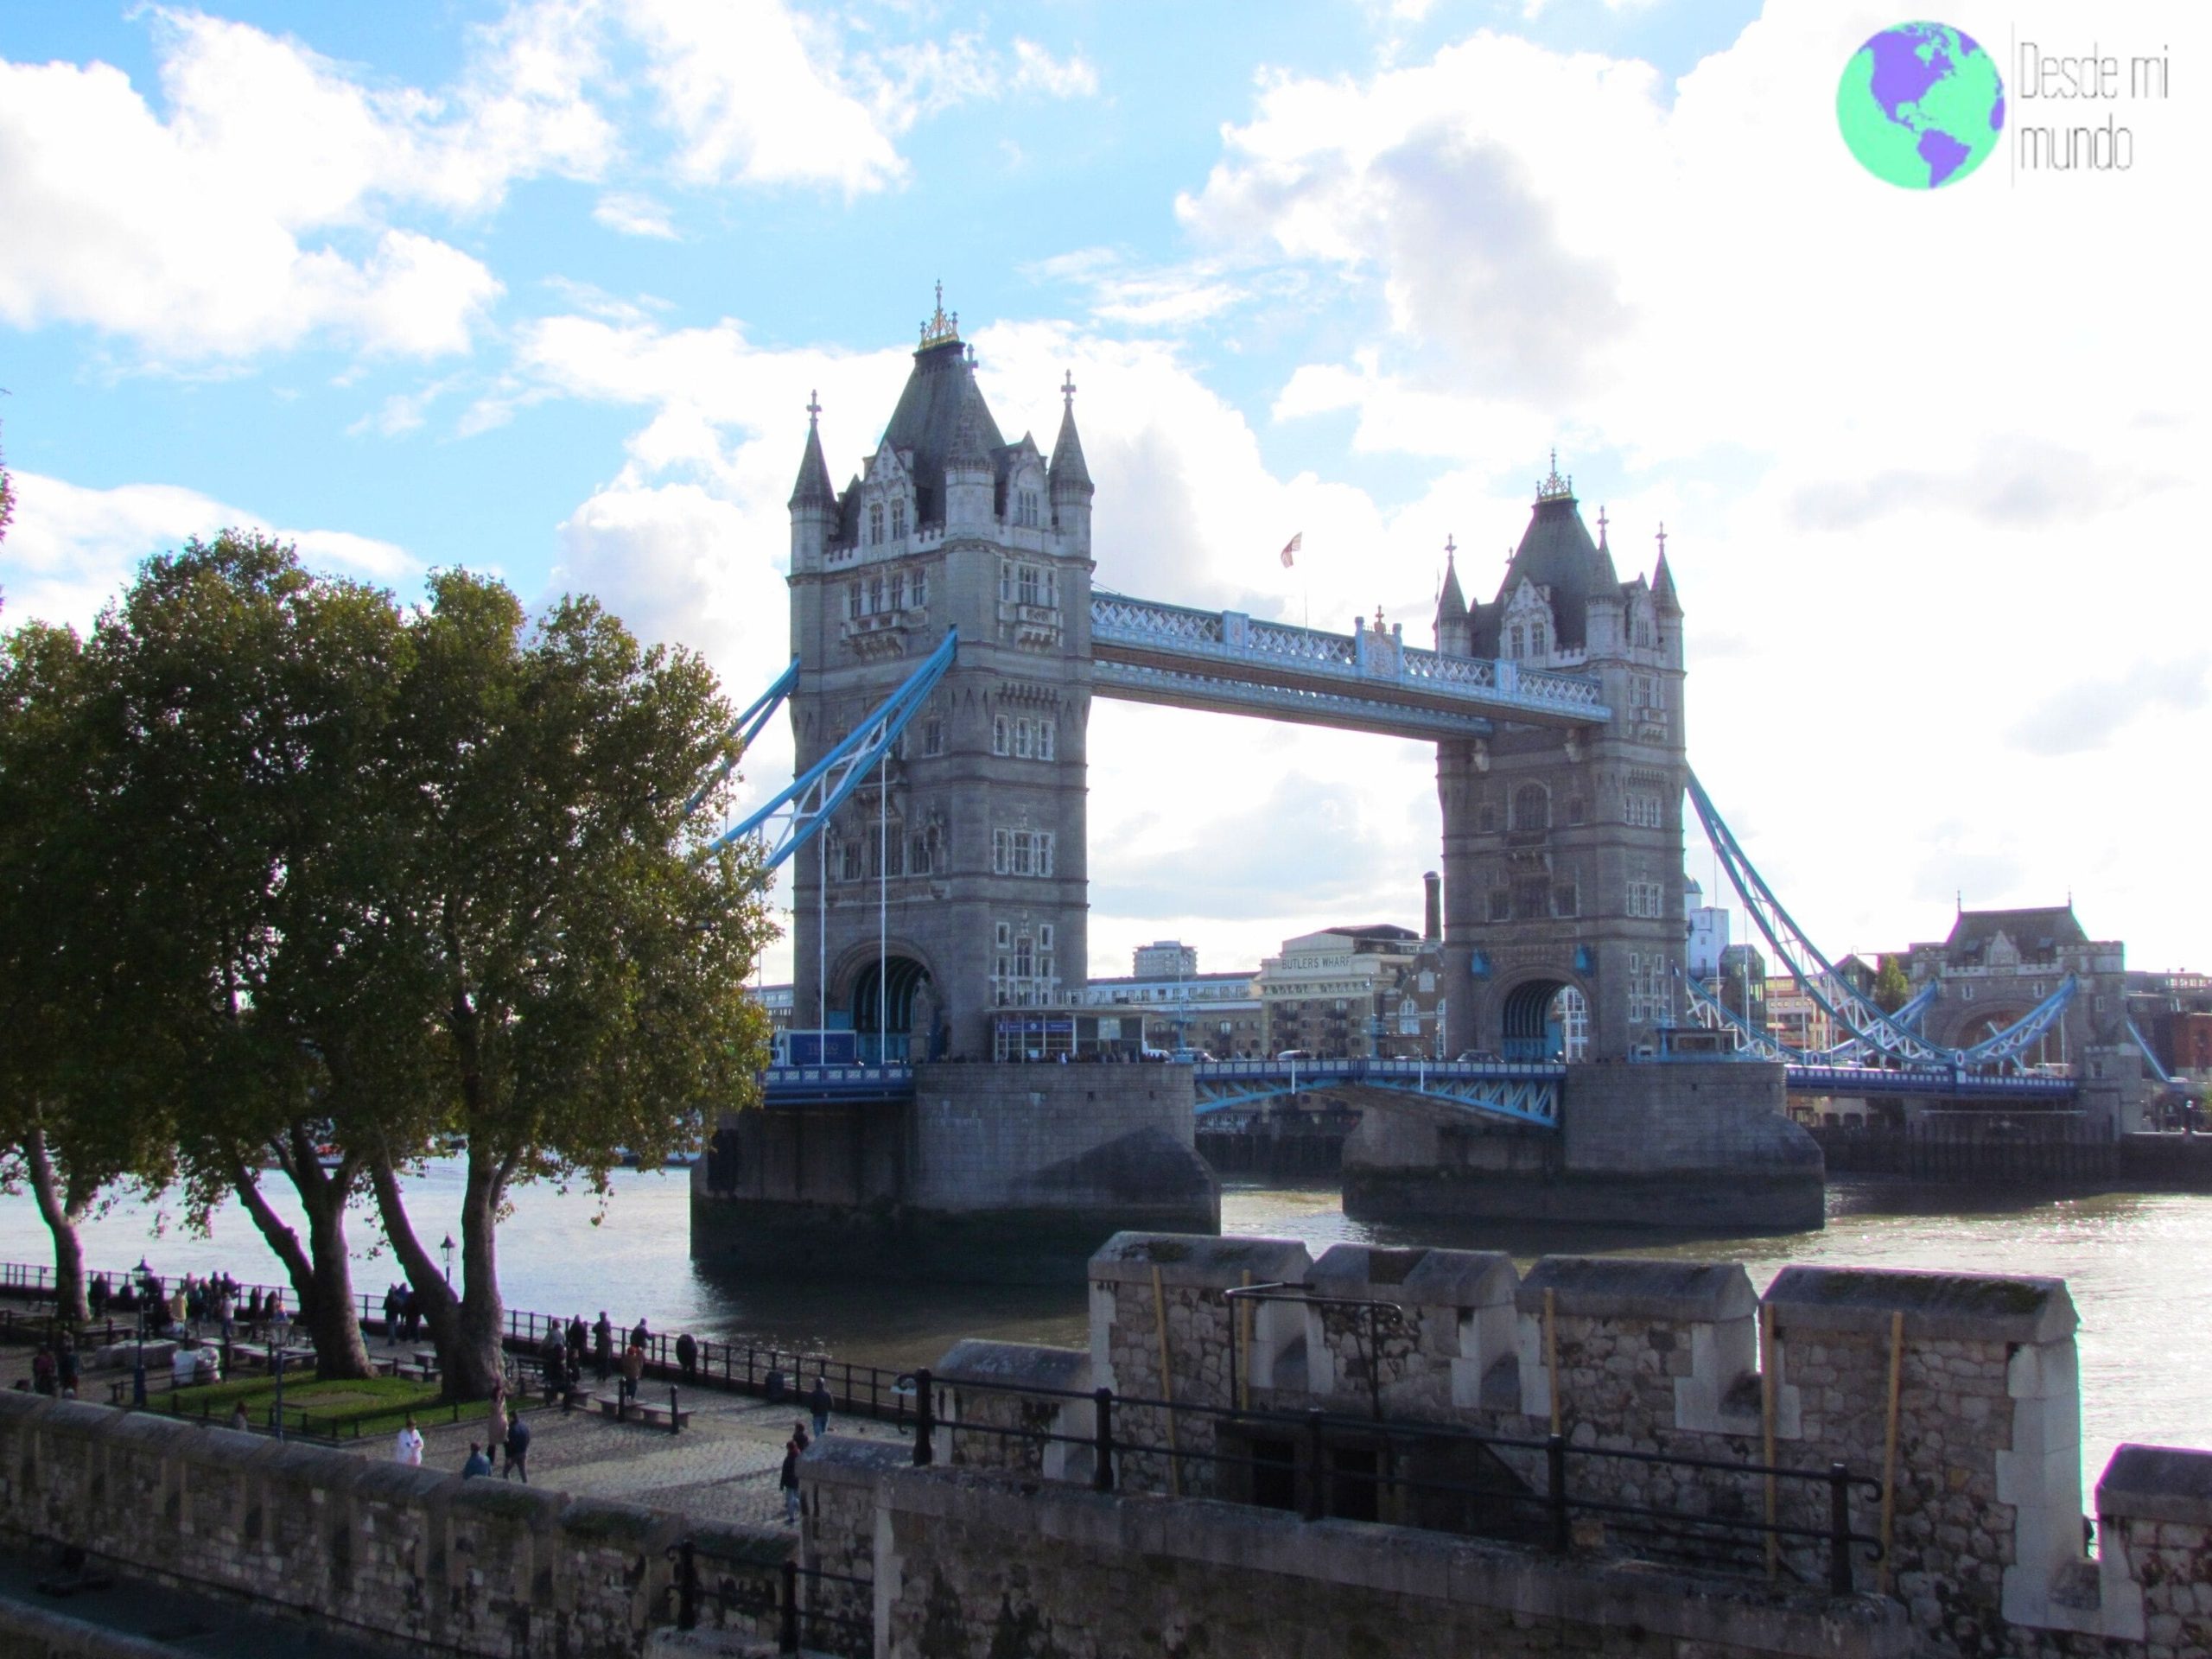 London Bridge - Escala en Londres - Desde mi mundo Blog de viajes